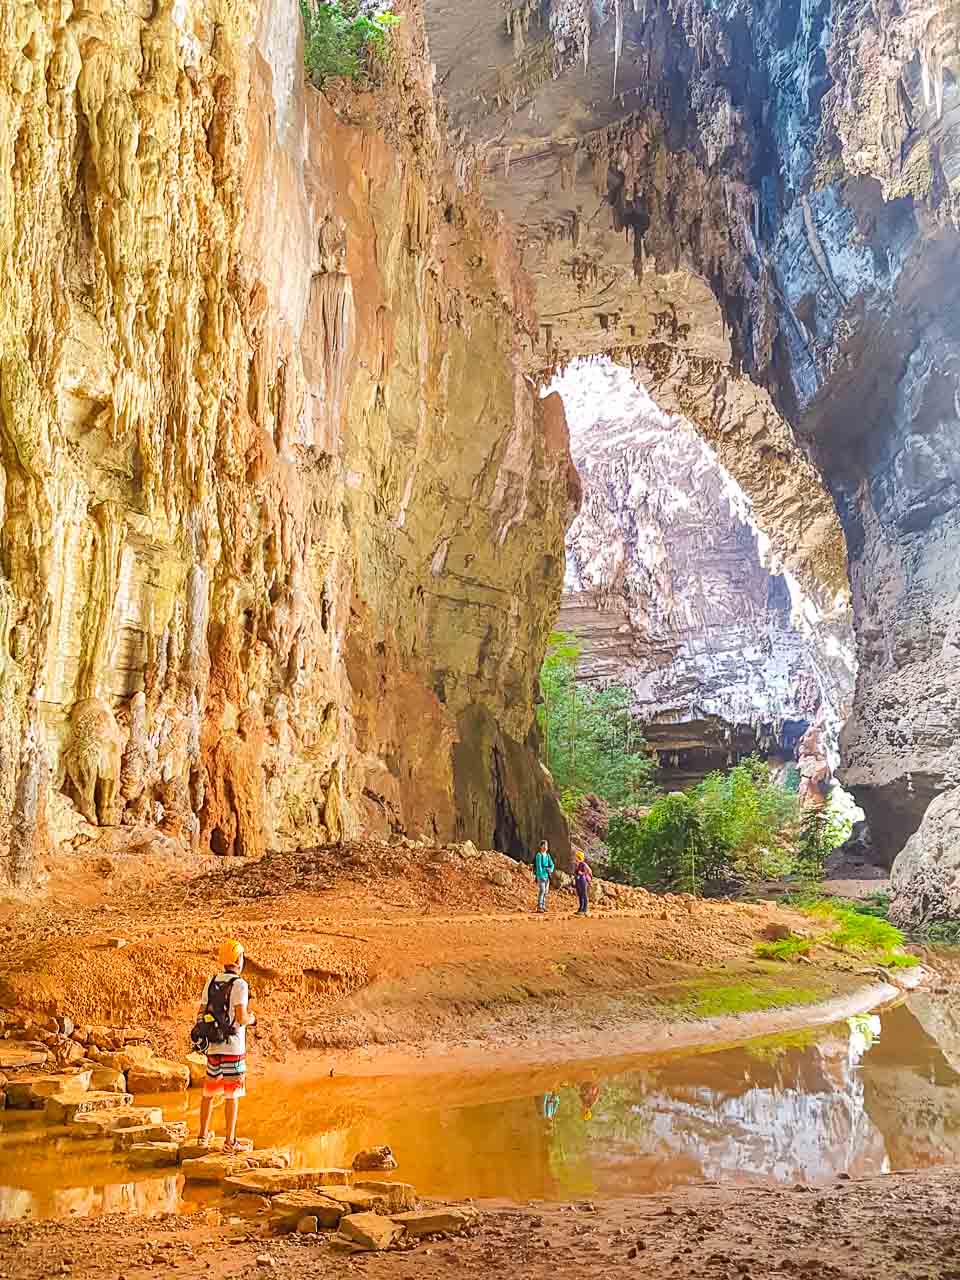 Toda a imensidão da Gruta do Janelão, no Parque Nacional Cavernas do Peruaçu. Foto do querido amigo Fábio Pastorello, do blog viagenscinematograficas.com.br